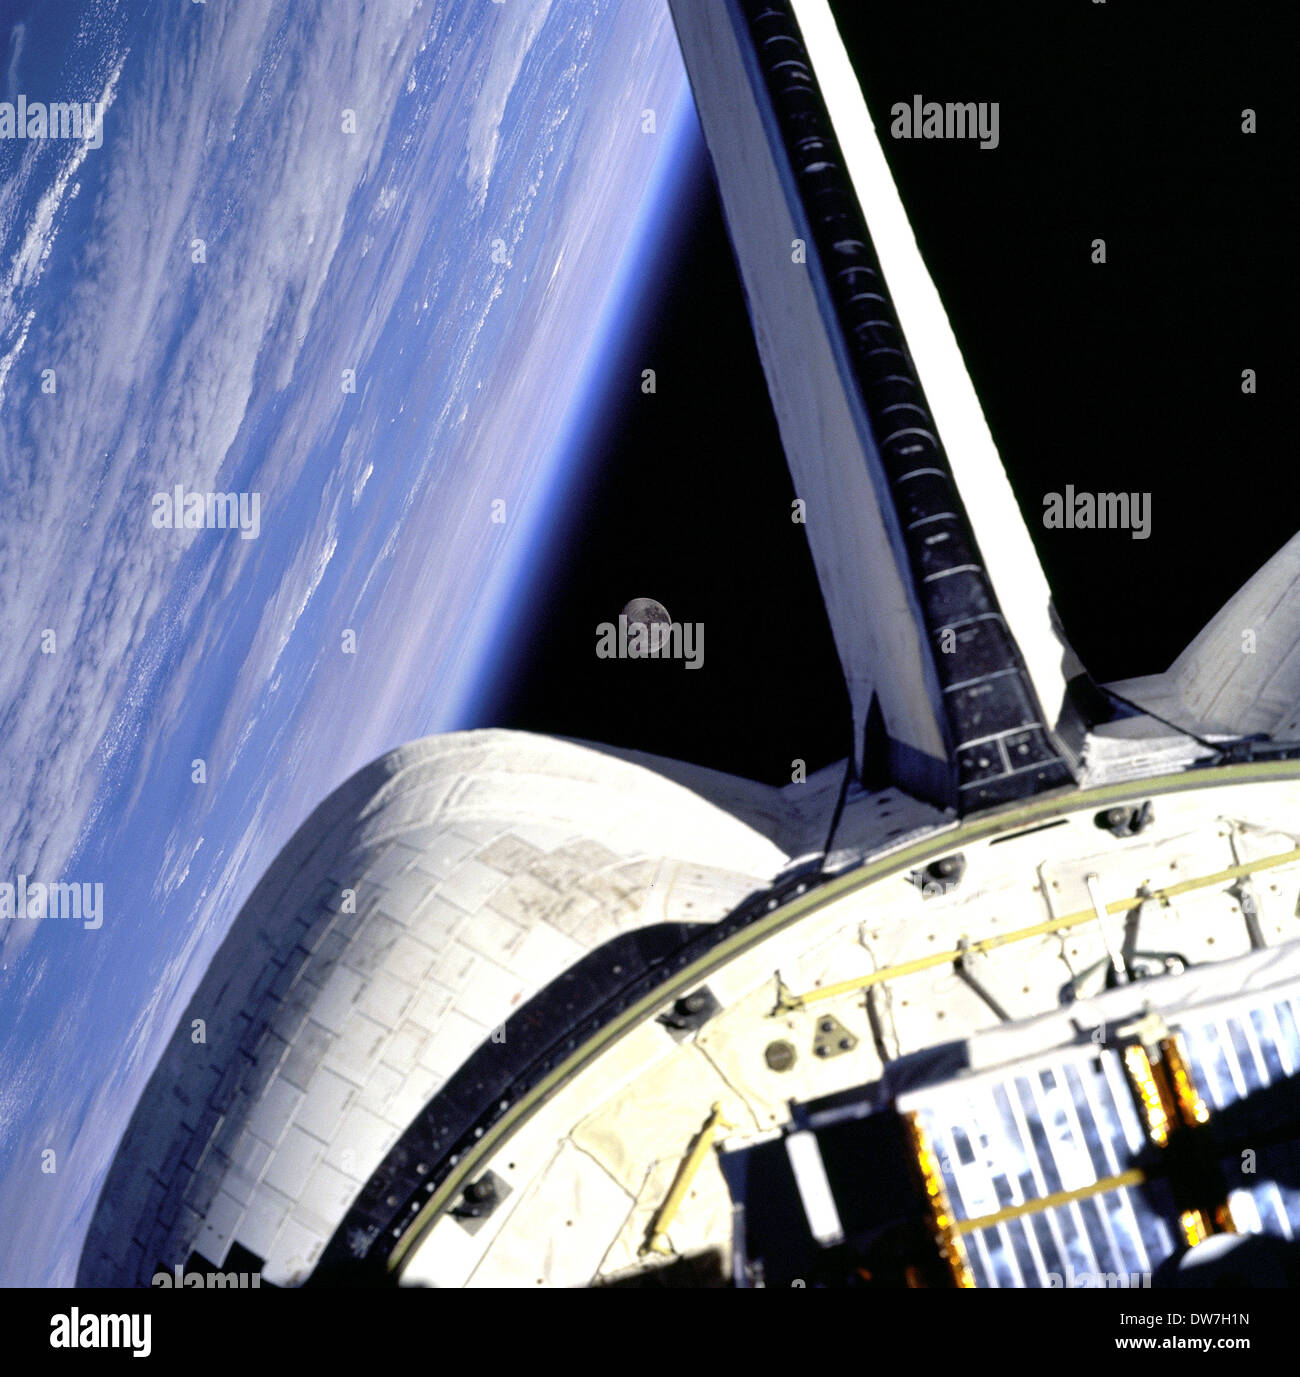 Messa a terra e la sua Luna, incorniciato in questa immagine presa da poppa windows della navetta spaziale Discovery Foto Stock